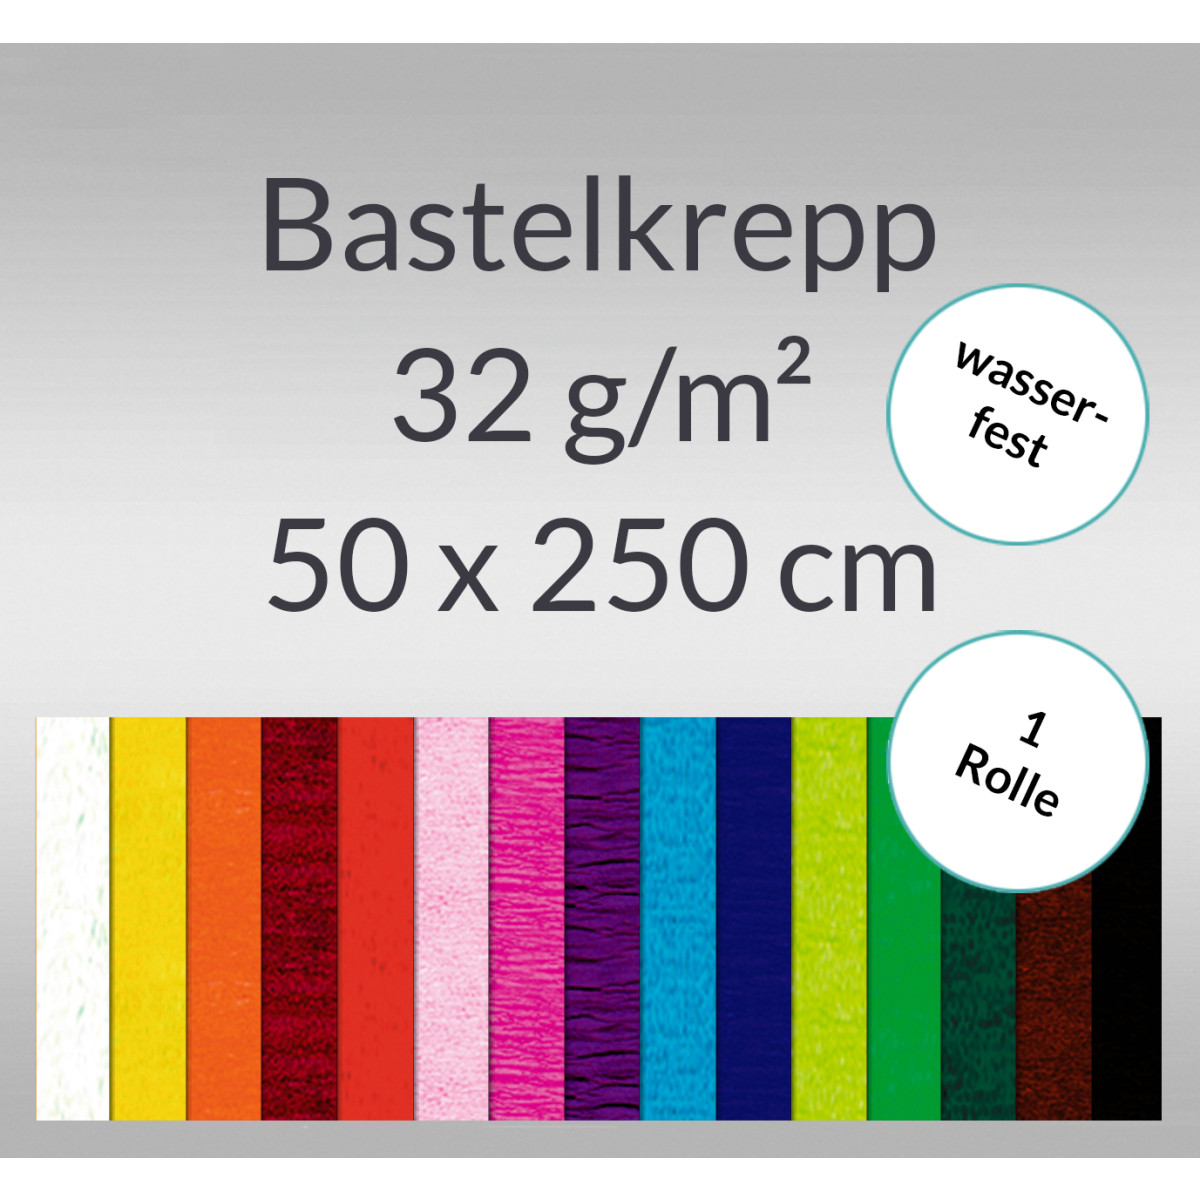 Bastelkrepp "wasserfest" 32 g/qm 50 cm x 2,5 m - 1 Rolle